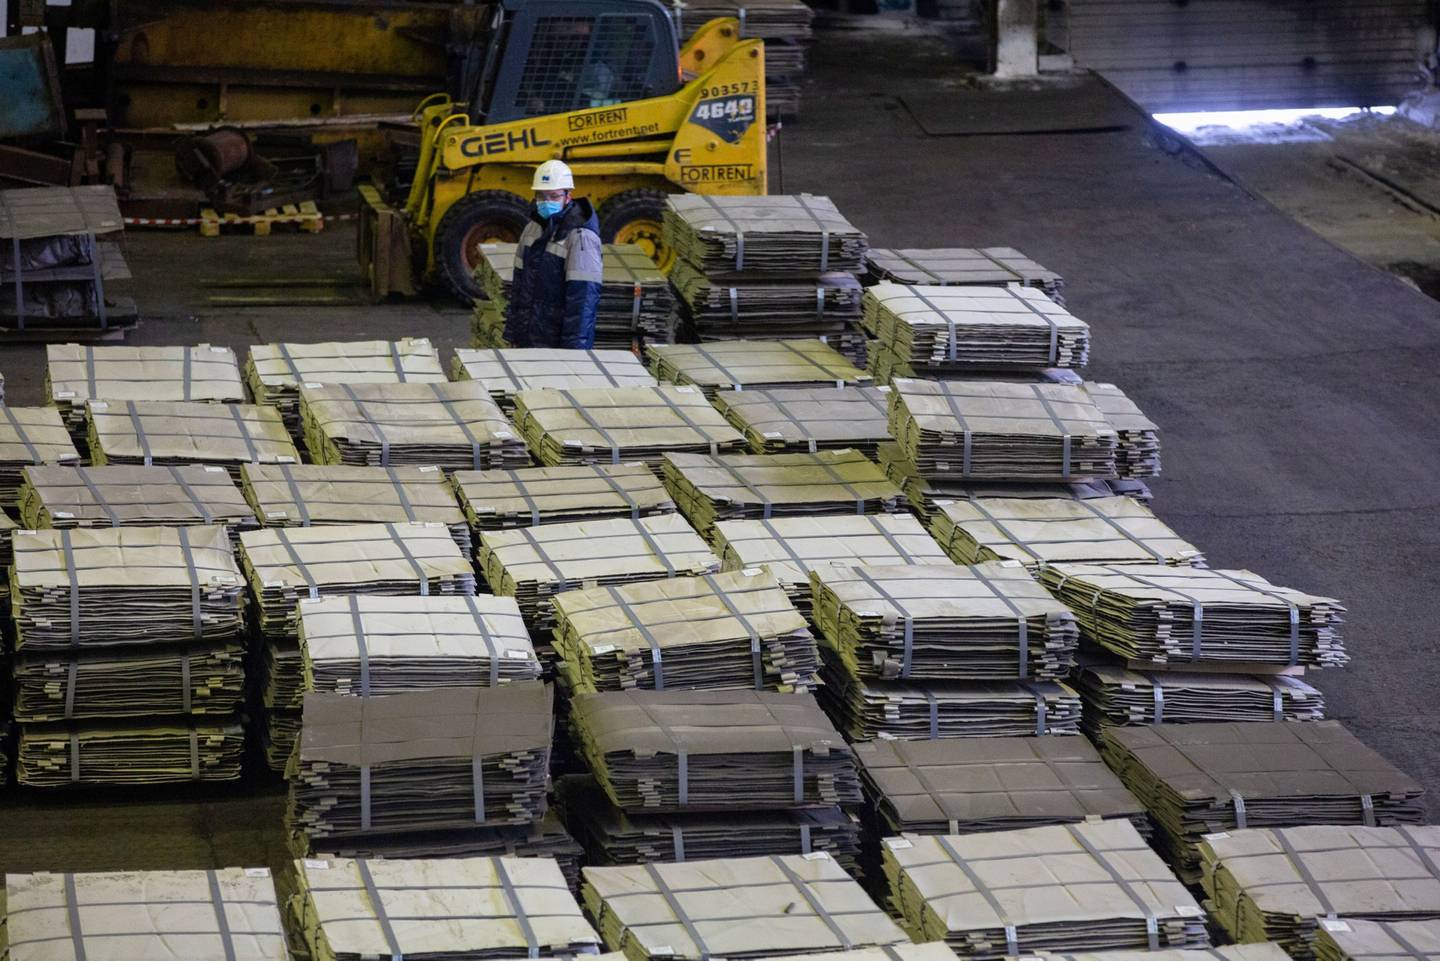 Necessidade do metal para baterias e tensões na Ucrânia (que afetam a Rússia, importante produtor de níquel) desequilibram mercado